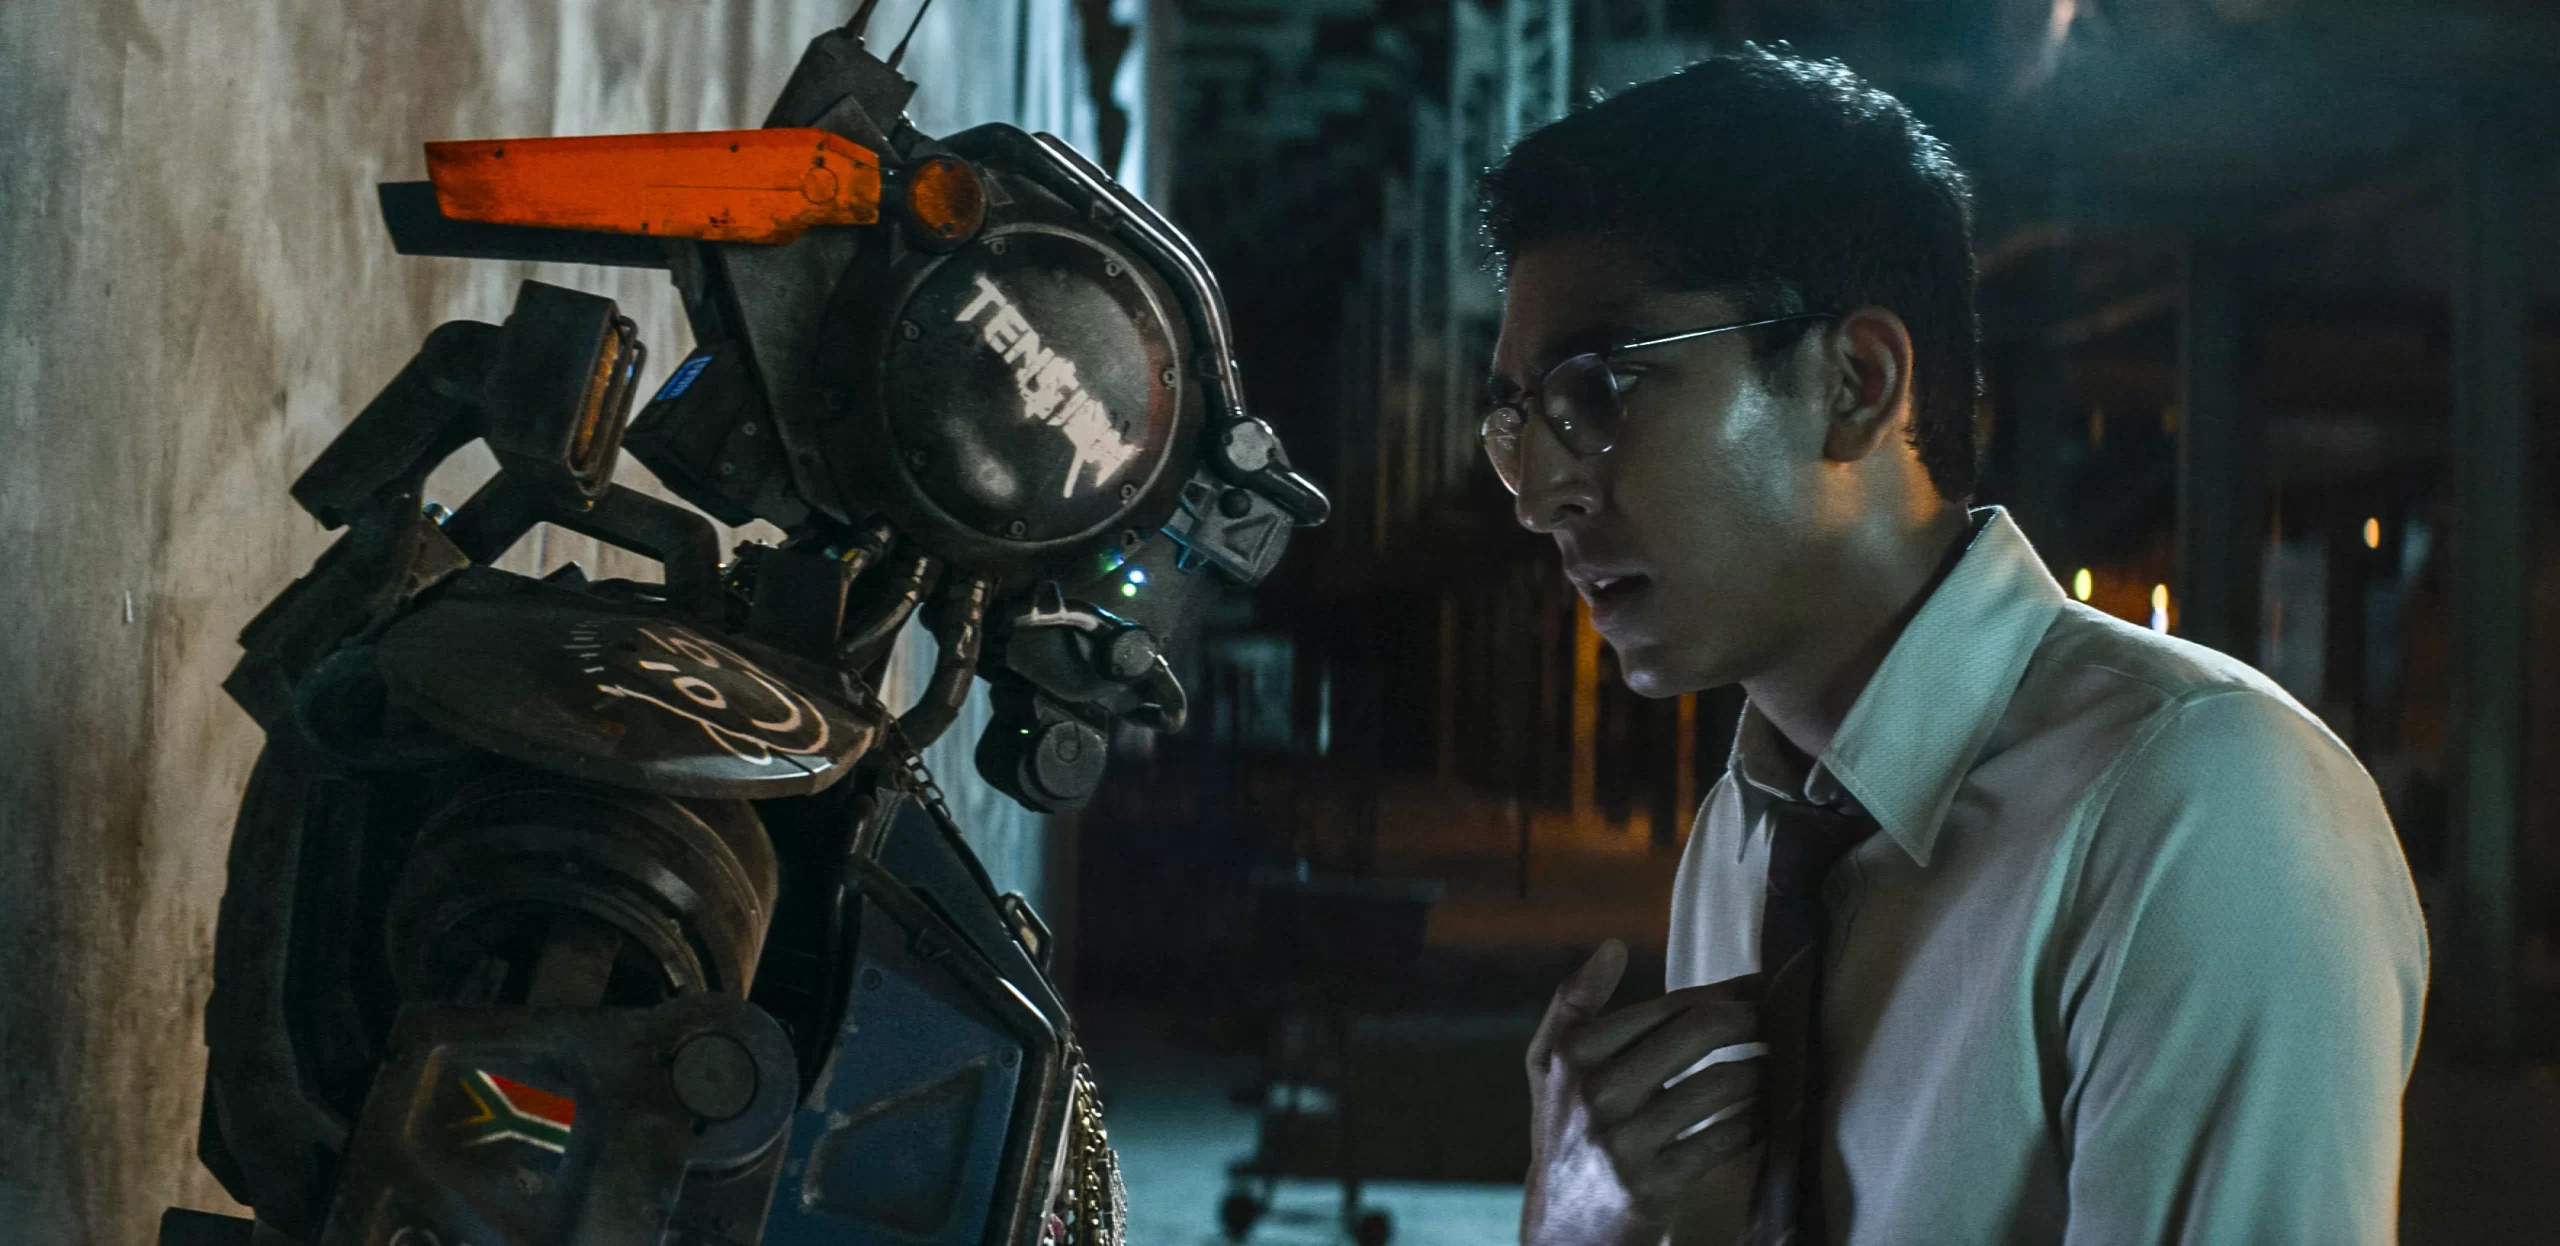 Кадр из фильма «Робот по имени Чаппи». Робот и человек общаются